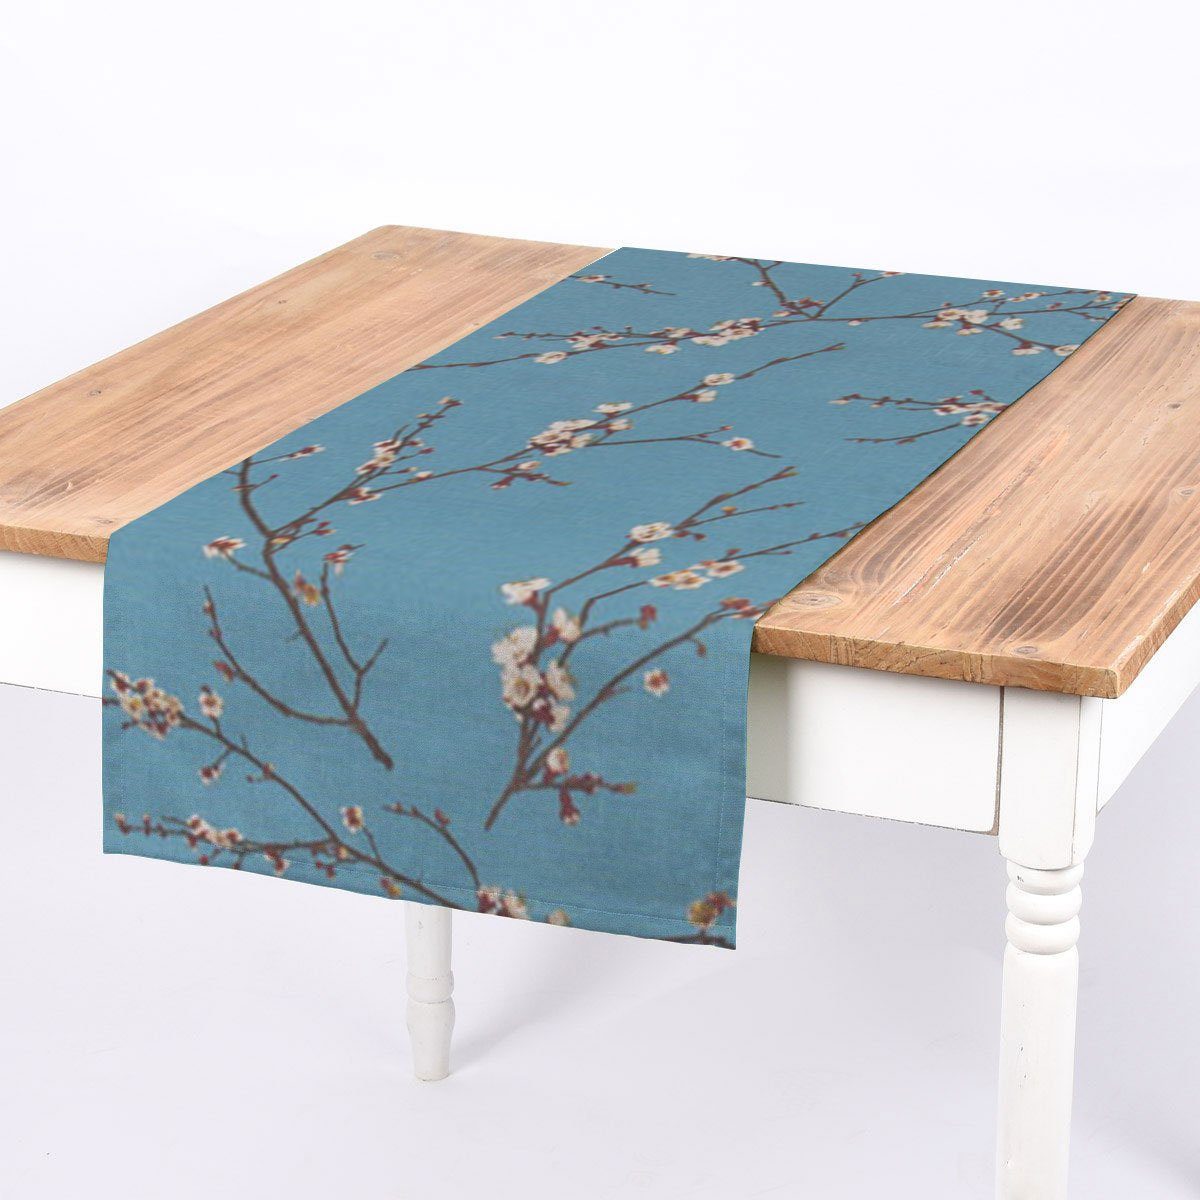 SCHÖNER LEBEN. Tischläufer SCHÖNER LEBEN. Tischläufer Kirschblüten blau braun weiß 40x160cm, handmade